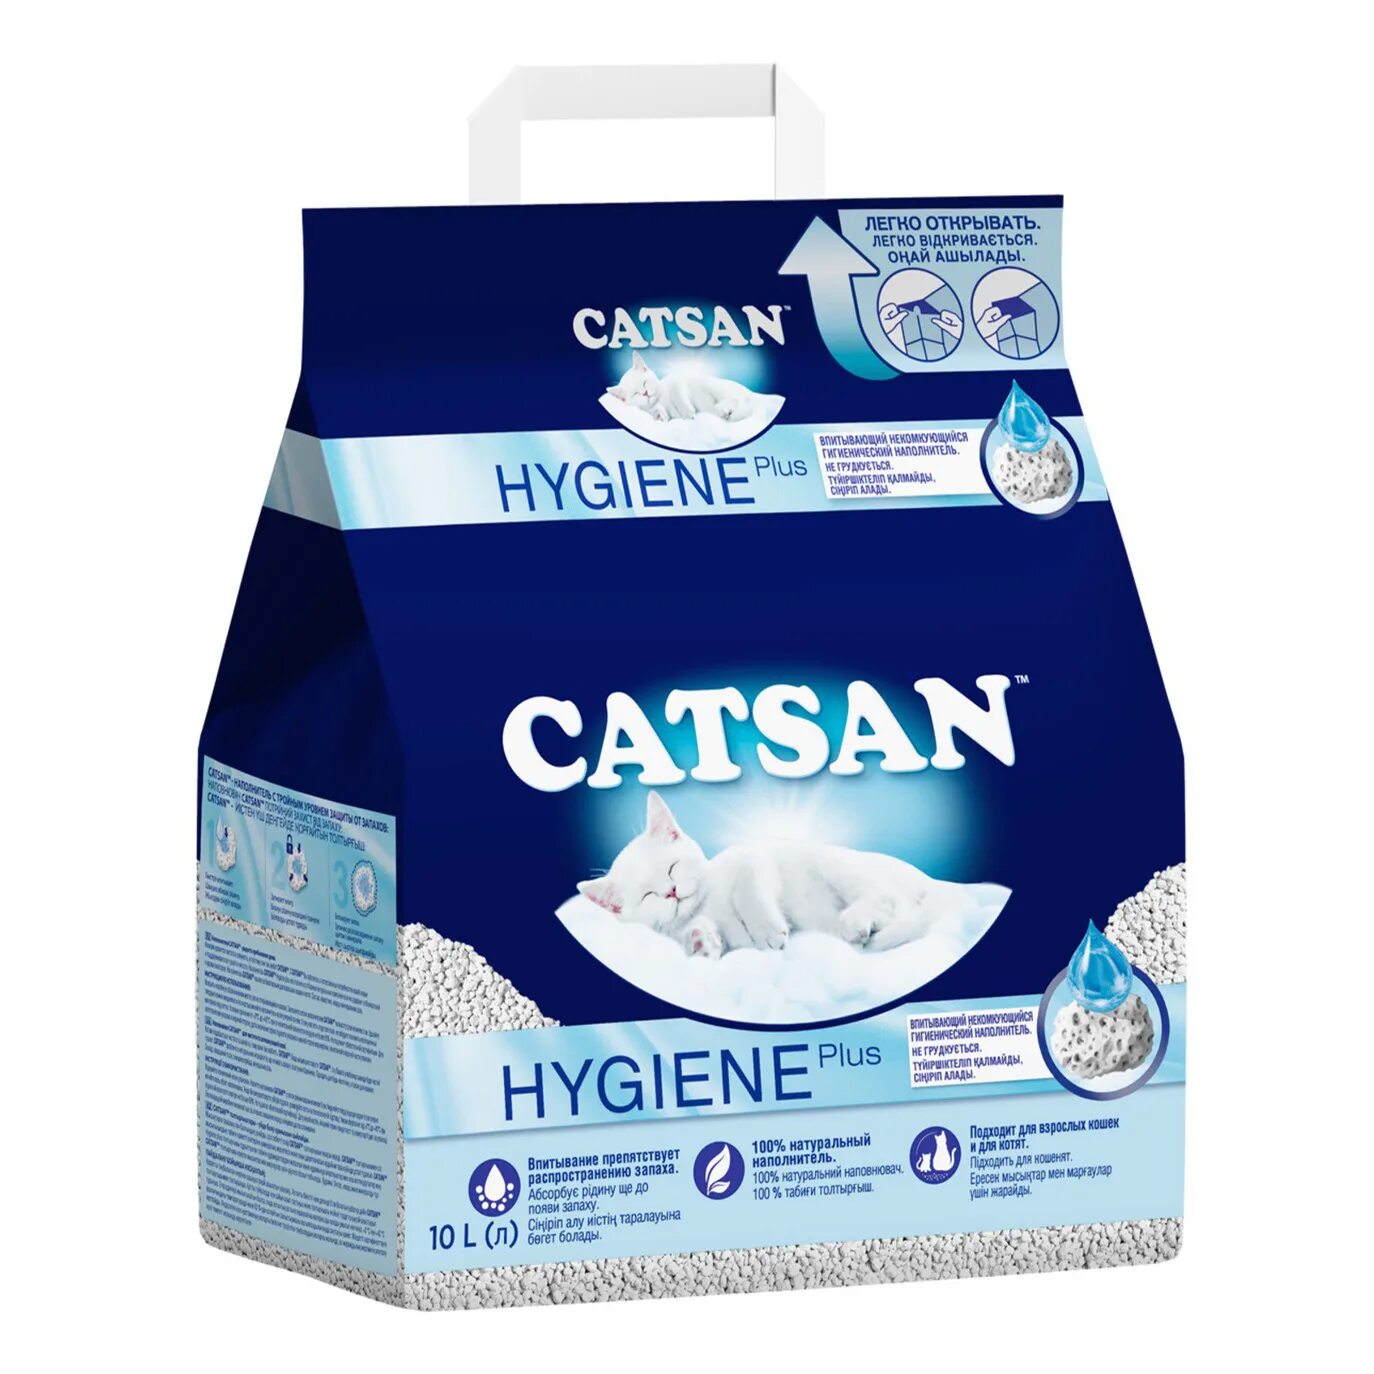 Наполнитель 10 л. Наполнитель 10л Катсан впитывающий. Catsan наполнитель Catsan 10 л. Впитывающий наполнитель Catsan Hygiene Plus 5 л. Впитывающий наполнитель Catsan Hygiene Plus 10 л.